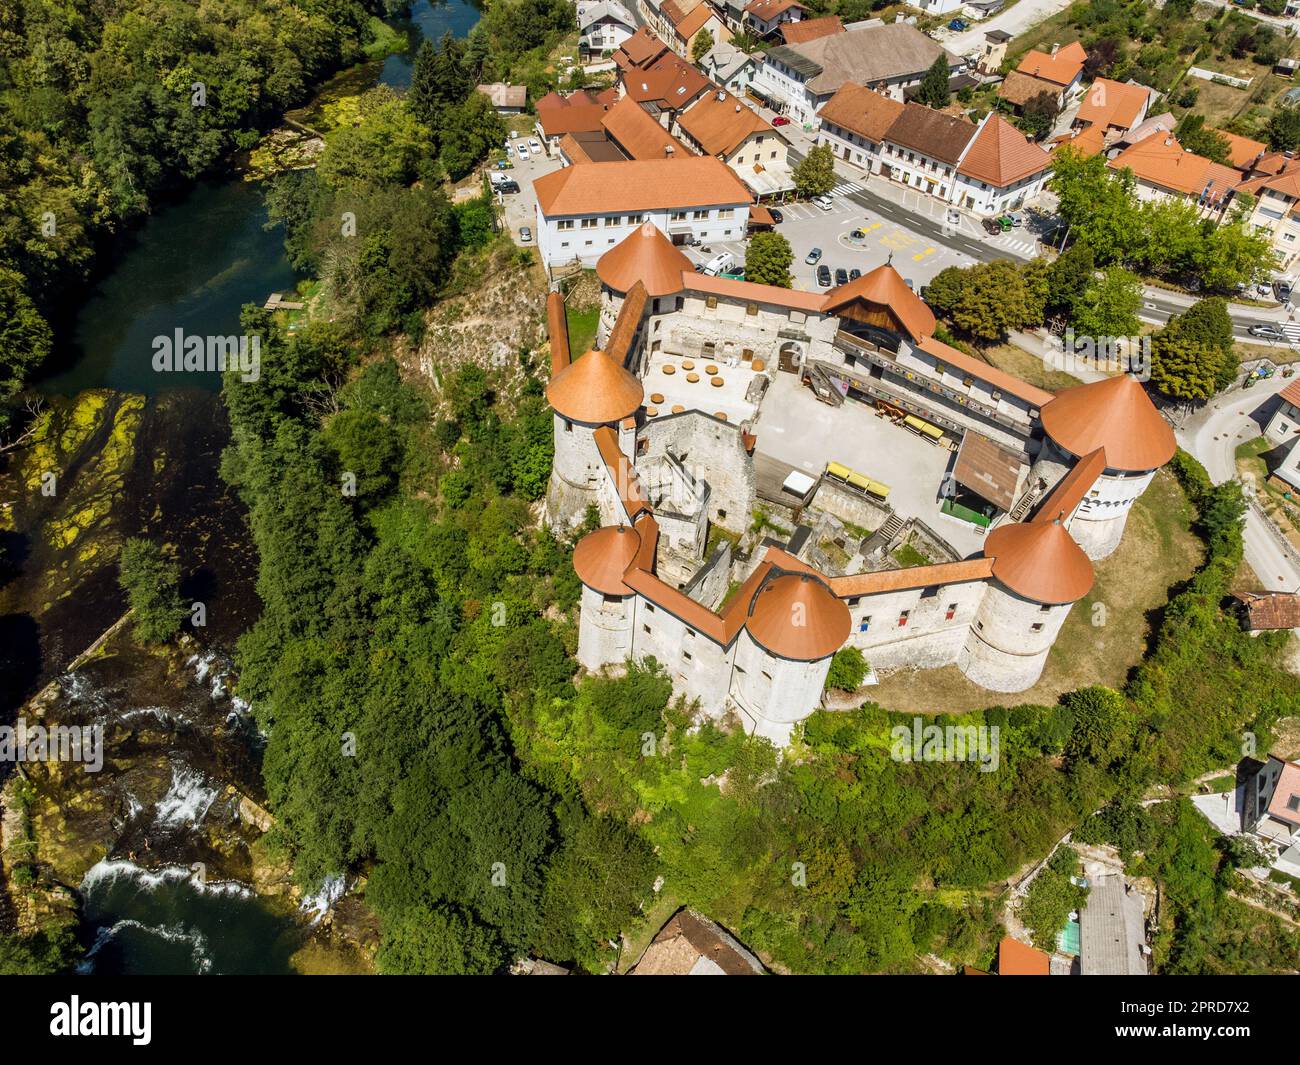 Vue aérienne par drone du château médiéval de Zuzemberk, Seisenburg ou Sosenberch, situé sur une terrasse au-dessus du canyon de la Krka, en Slovénie centrale. Banque D'Images